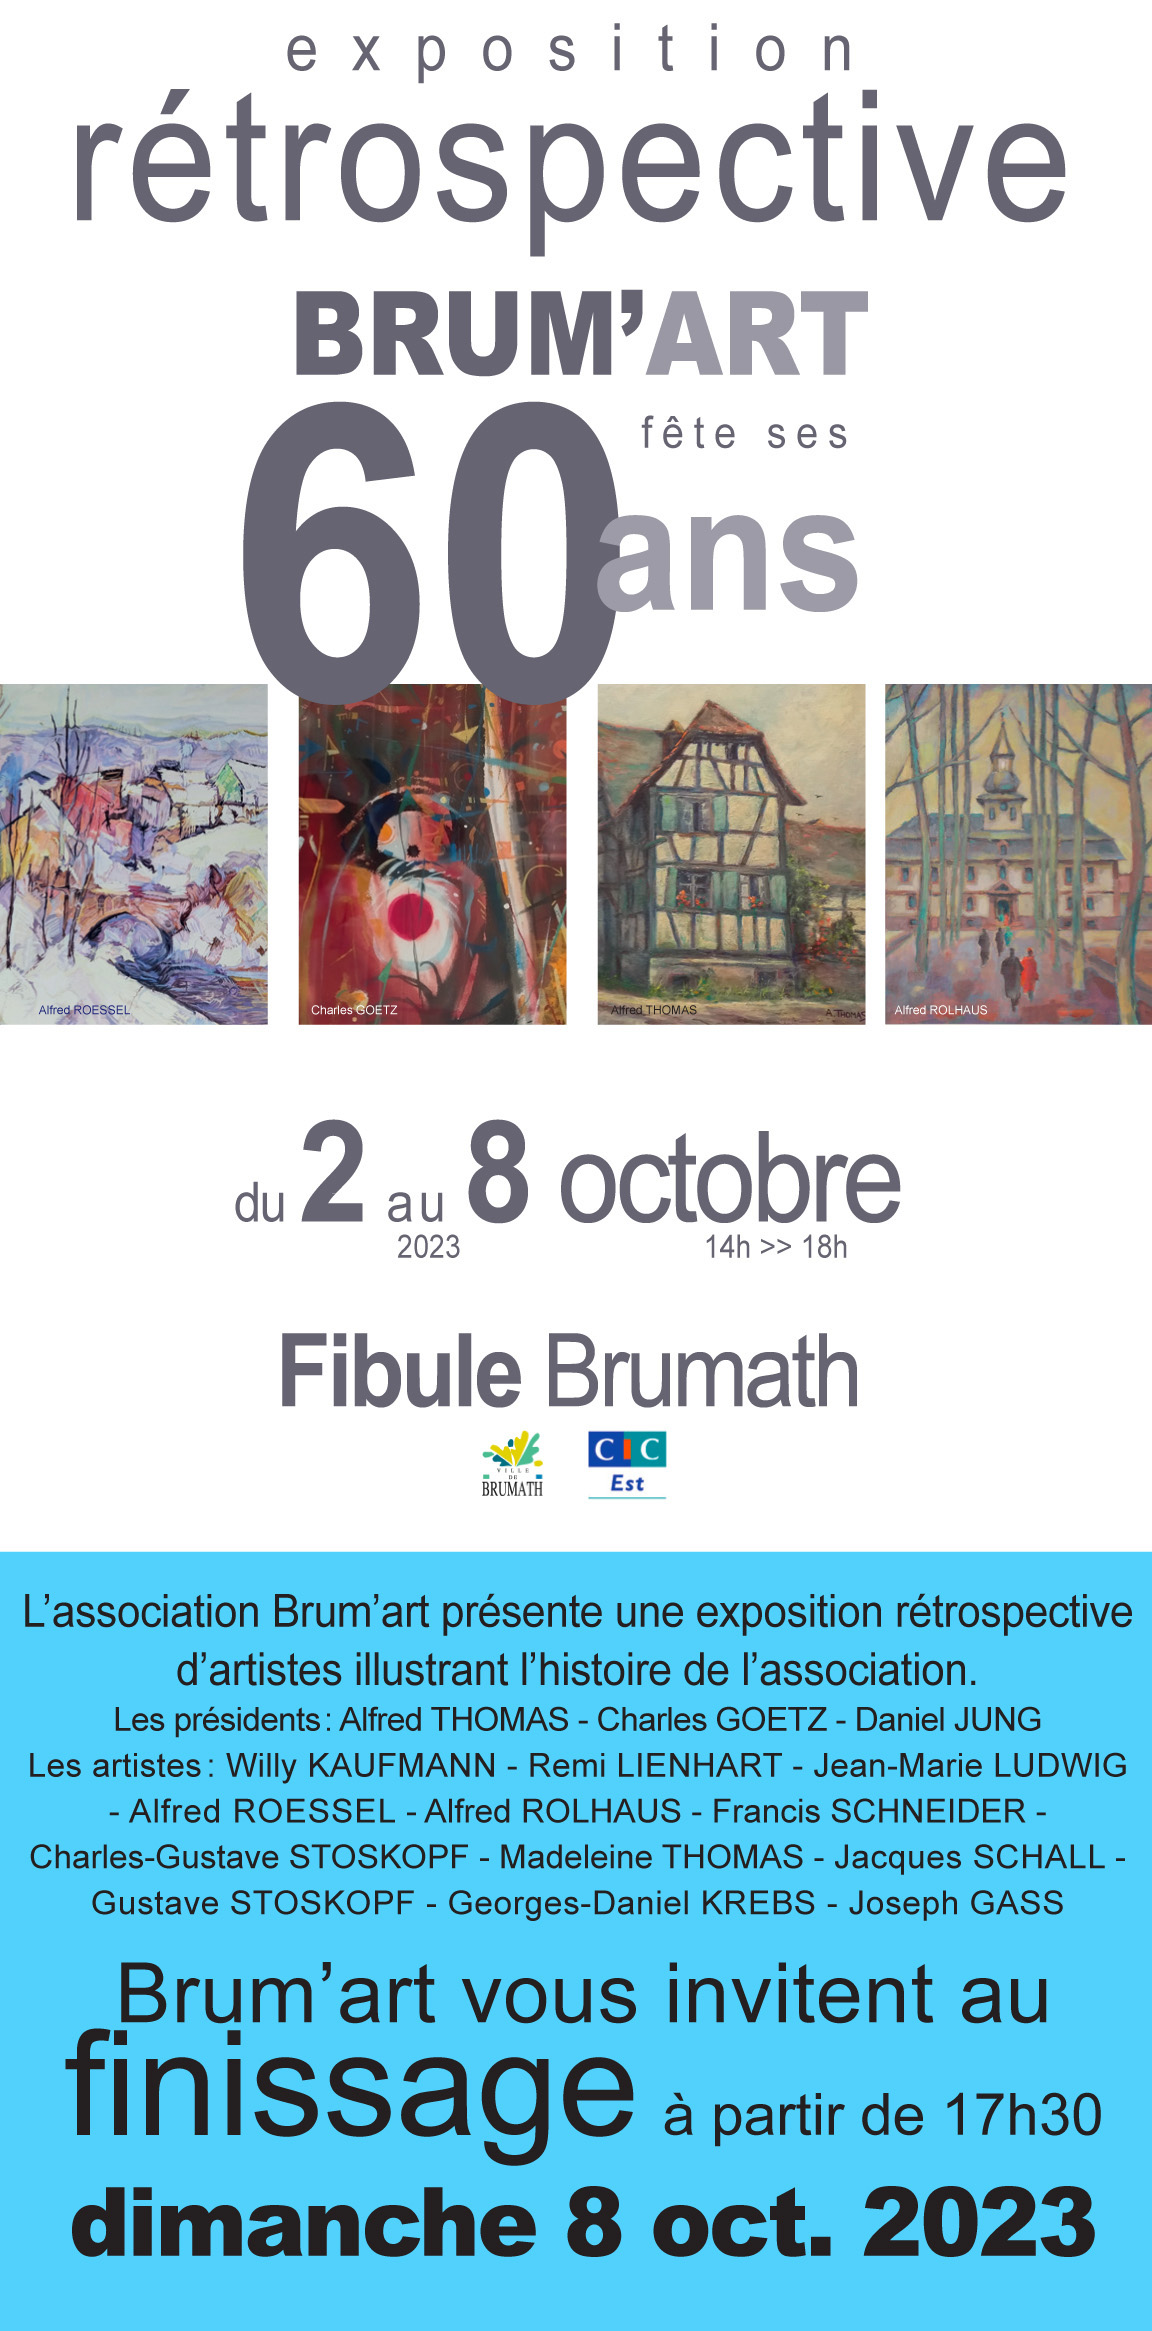 Exposition rétrospective BRUM’ART fête ses 60 ans